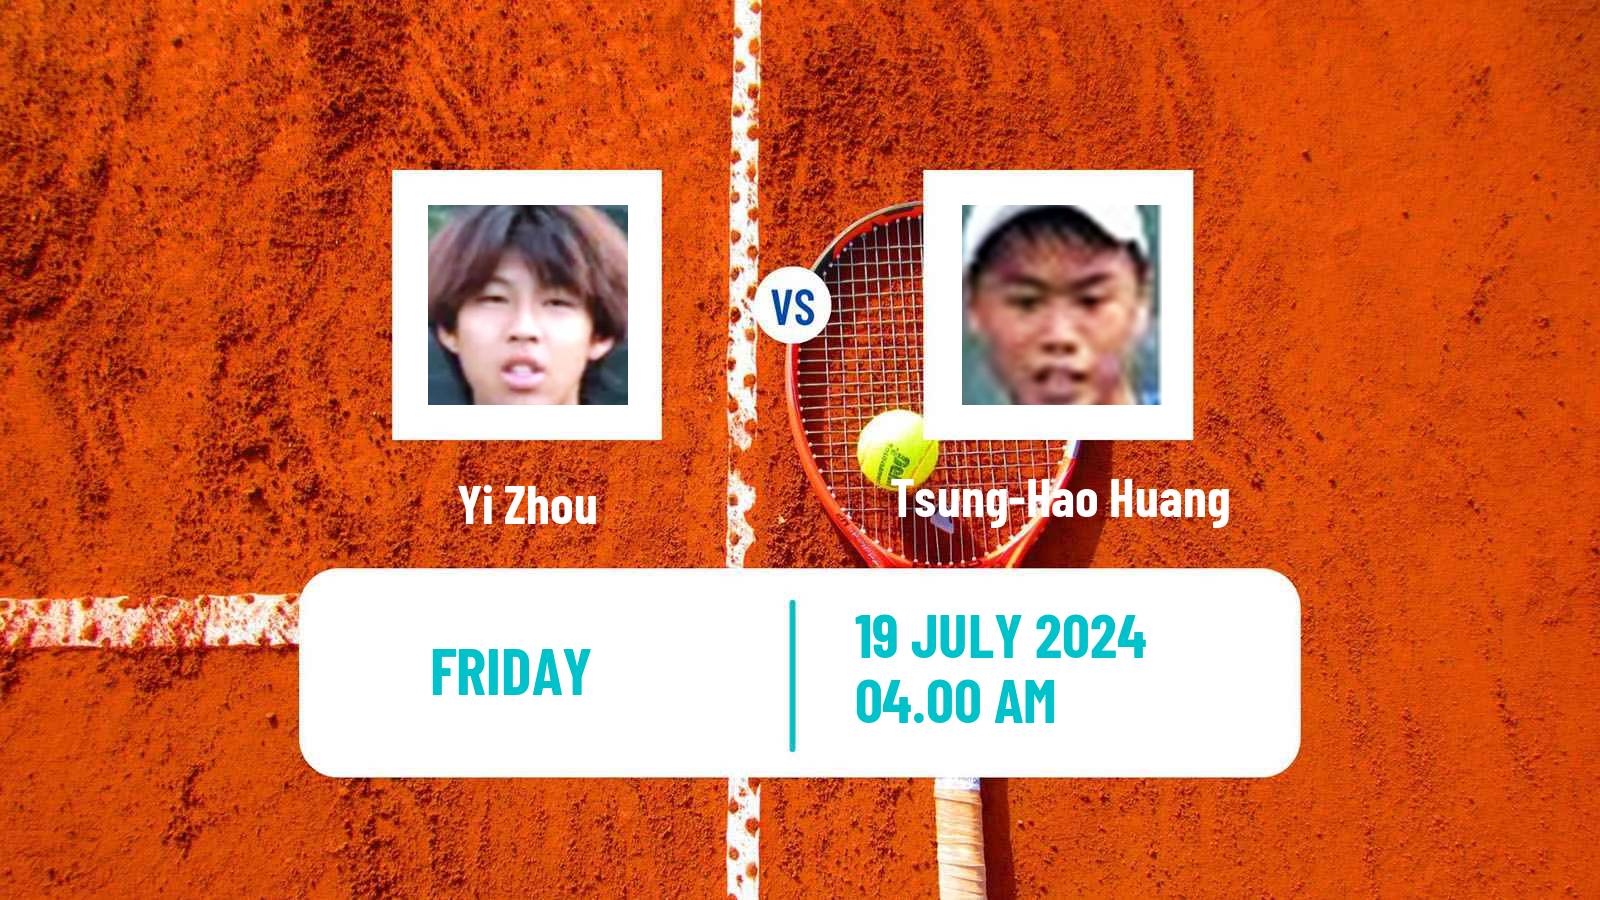 Tennis ITF M25 Tianjin 2 Men Yi Zhou - Tsung-Hao Huang